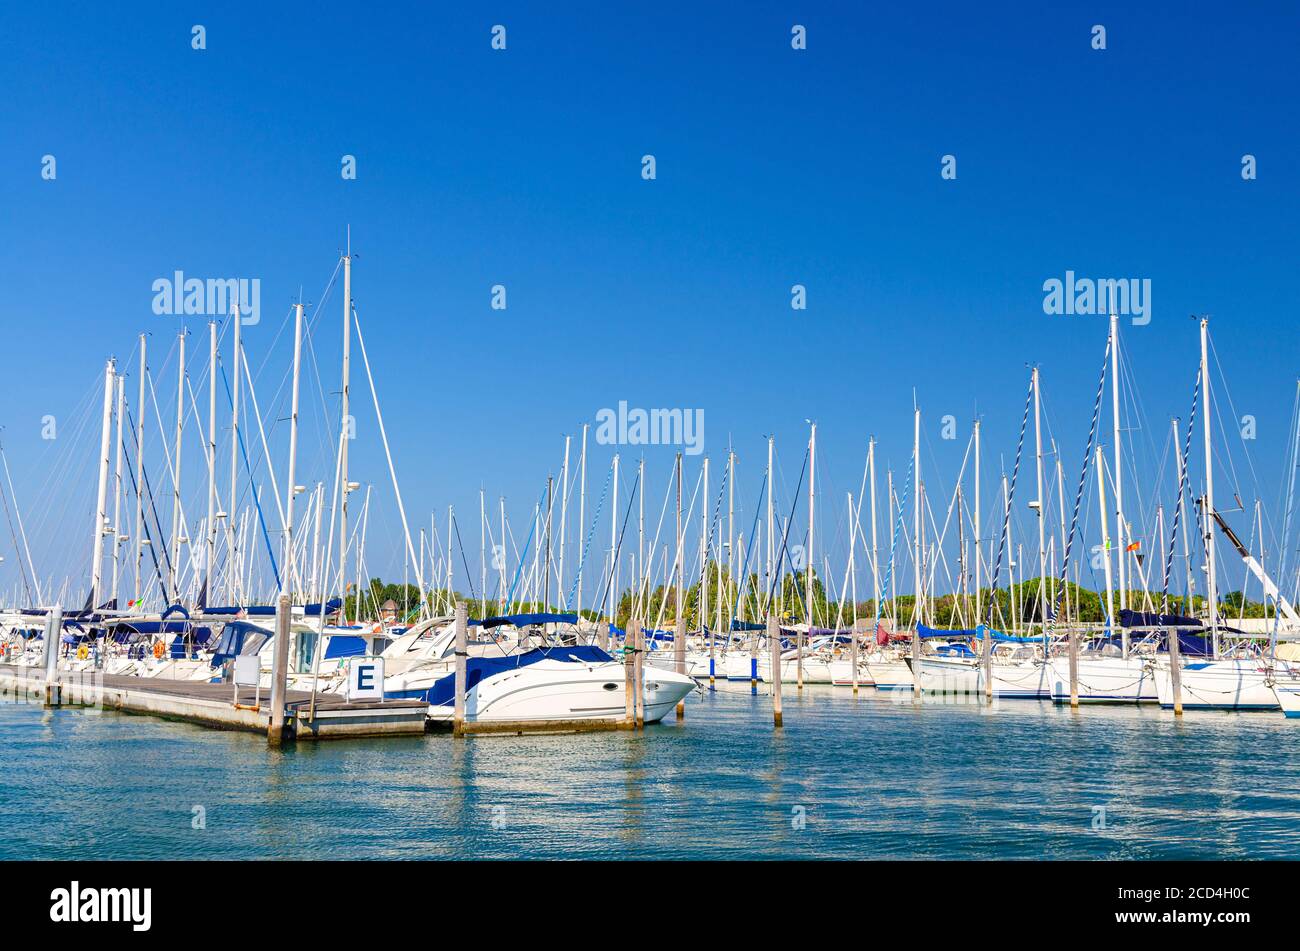 Gli yacht bianchi sono ormeggiati sull'acqua del parcheggio del molo nel porto turistico della città di Sottomarina nel giorno d'estate, sfondo blu cielo, Regione Veneto, Italia settentrionale Foto Stock